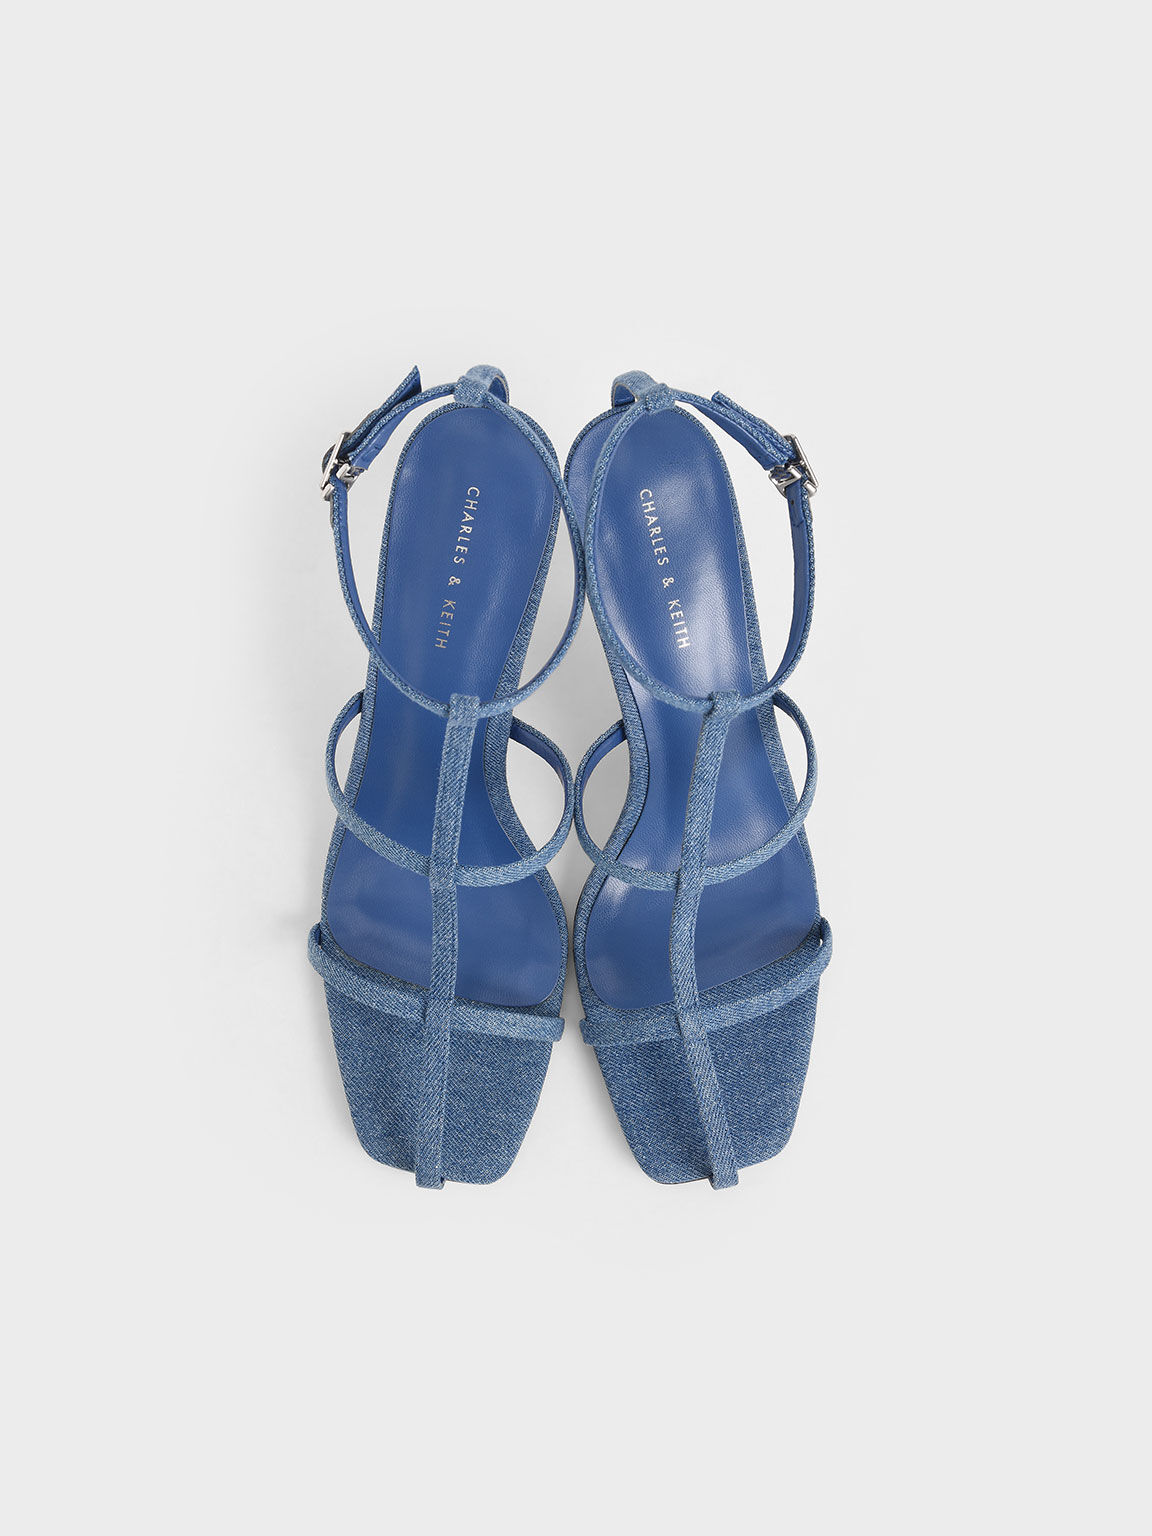 Denim Caged Strappy Heeled Sandals, Blue, hi-res